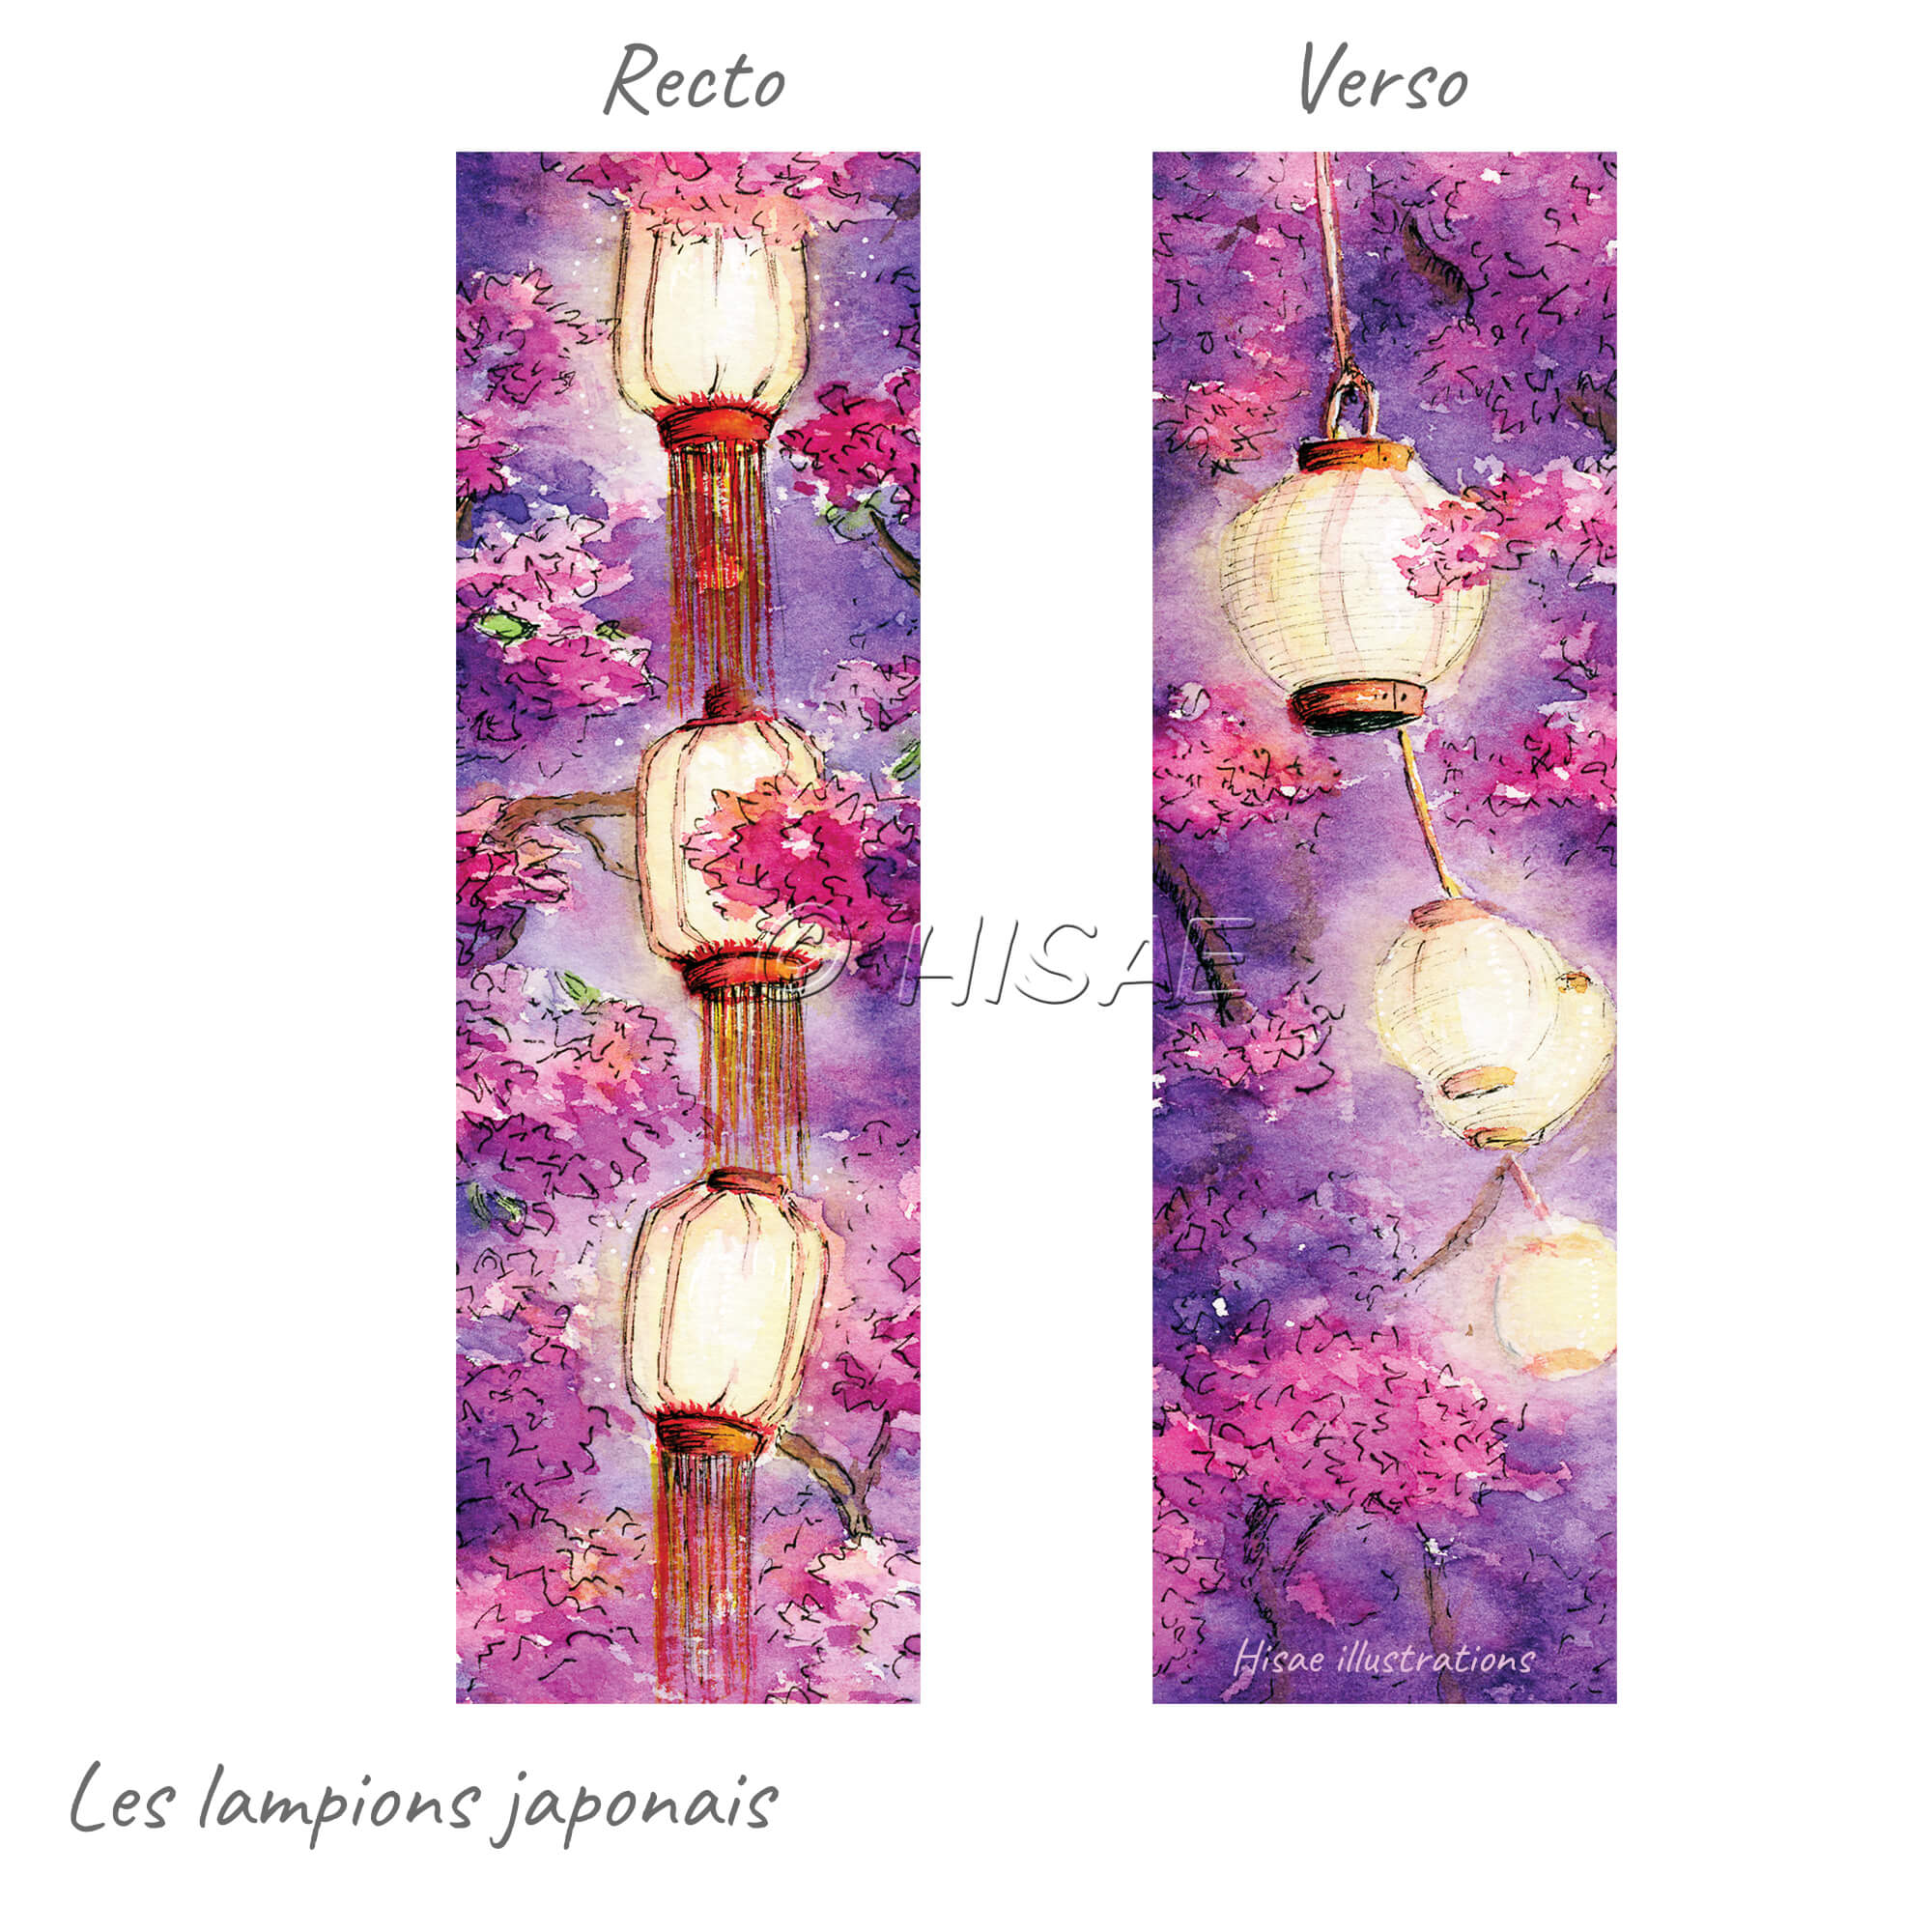 Marque-pages décoré de lampions japonais entouré de cerisiers à l'aquarelle @Hisae illustrations